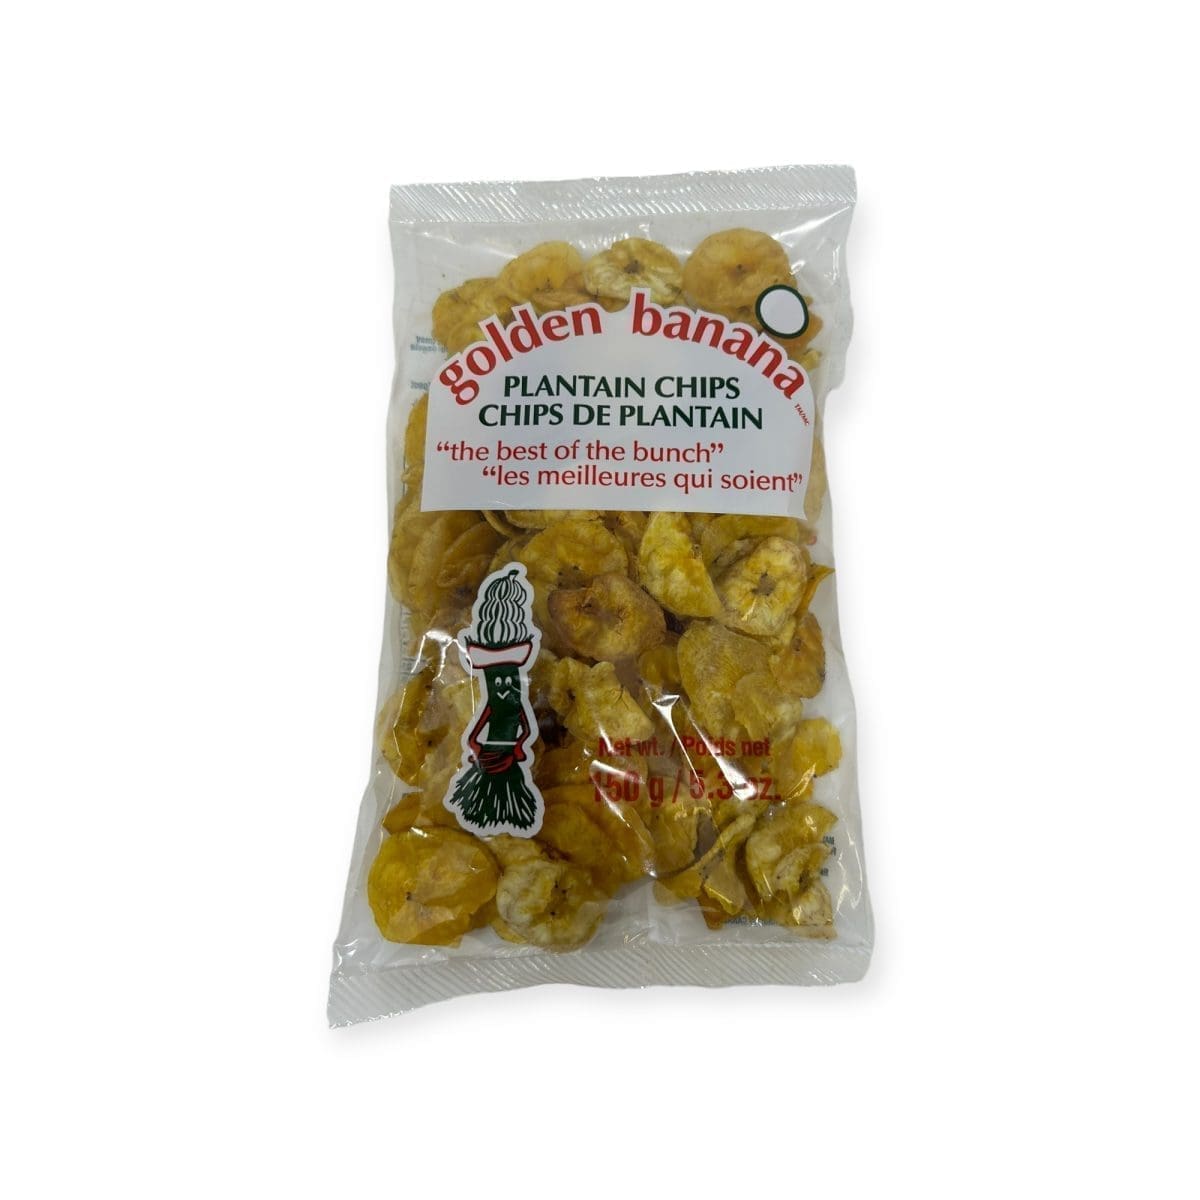 Golden Banana Plantain Chips (150g)